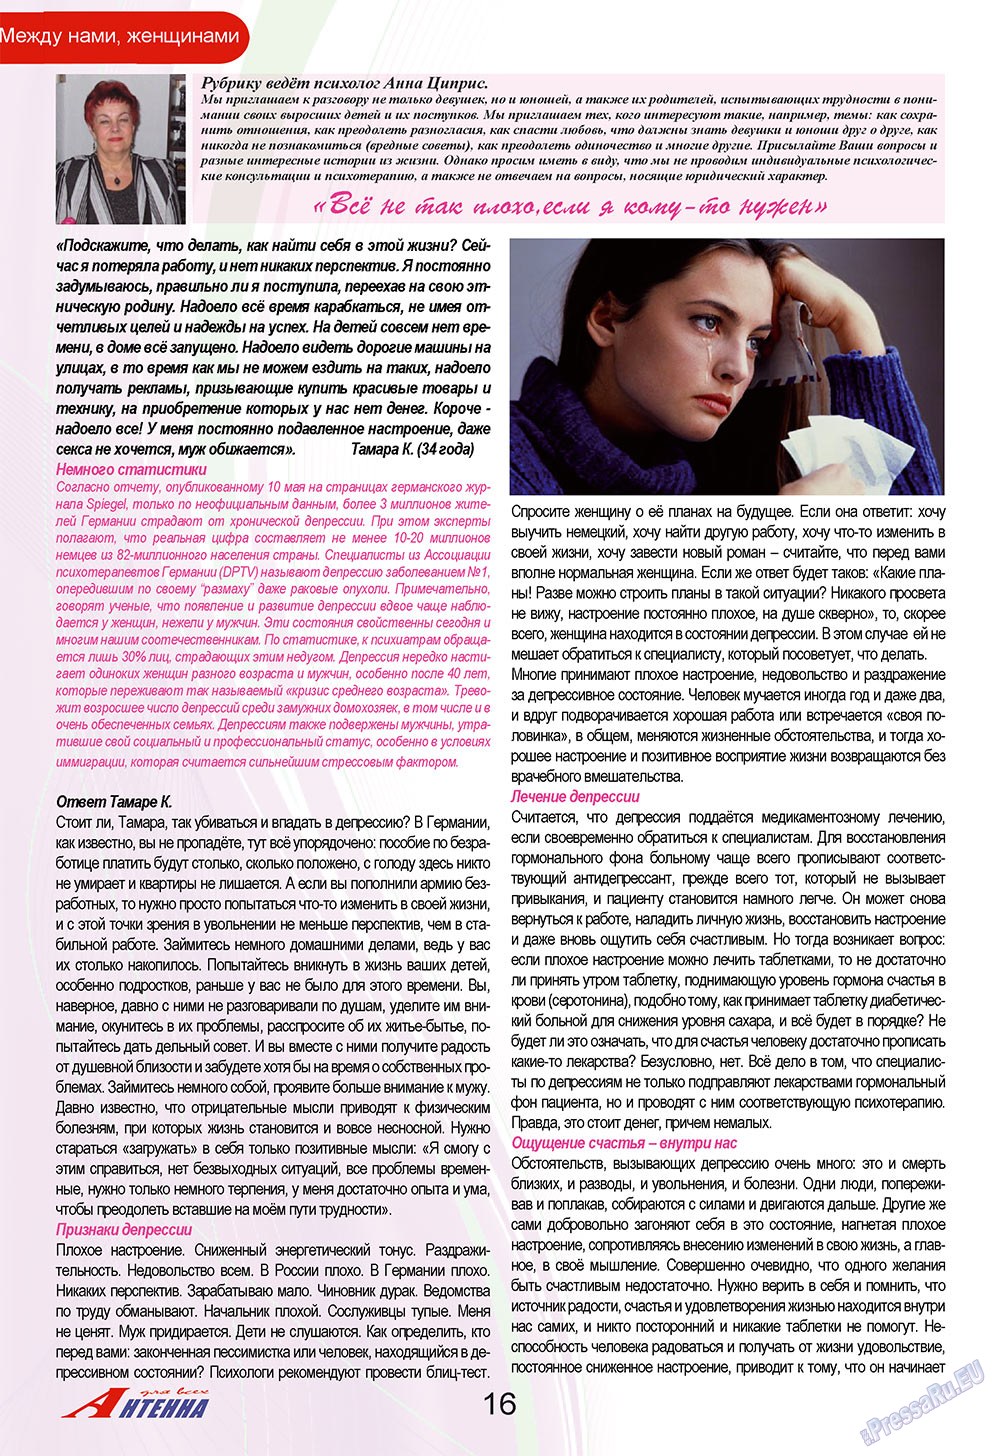 Антенна, журнал. 2009 №4 стр.16